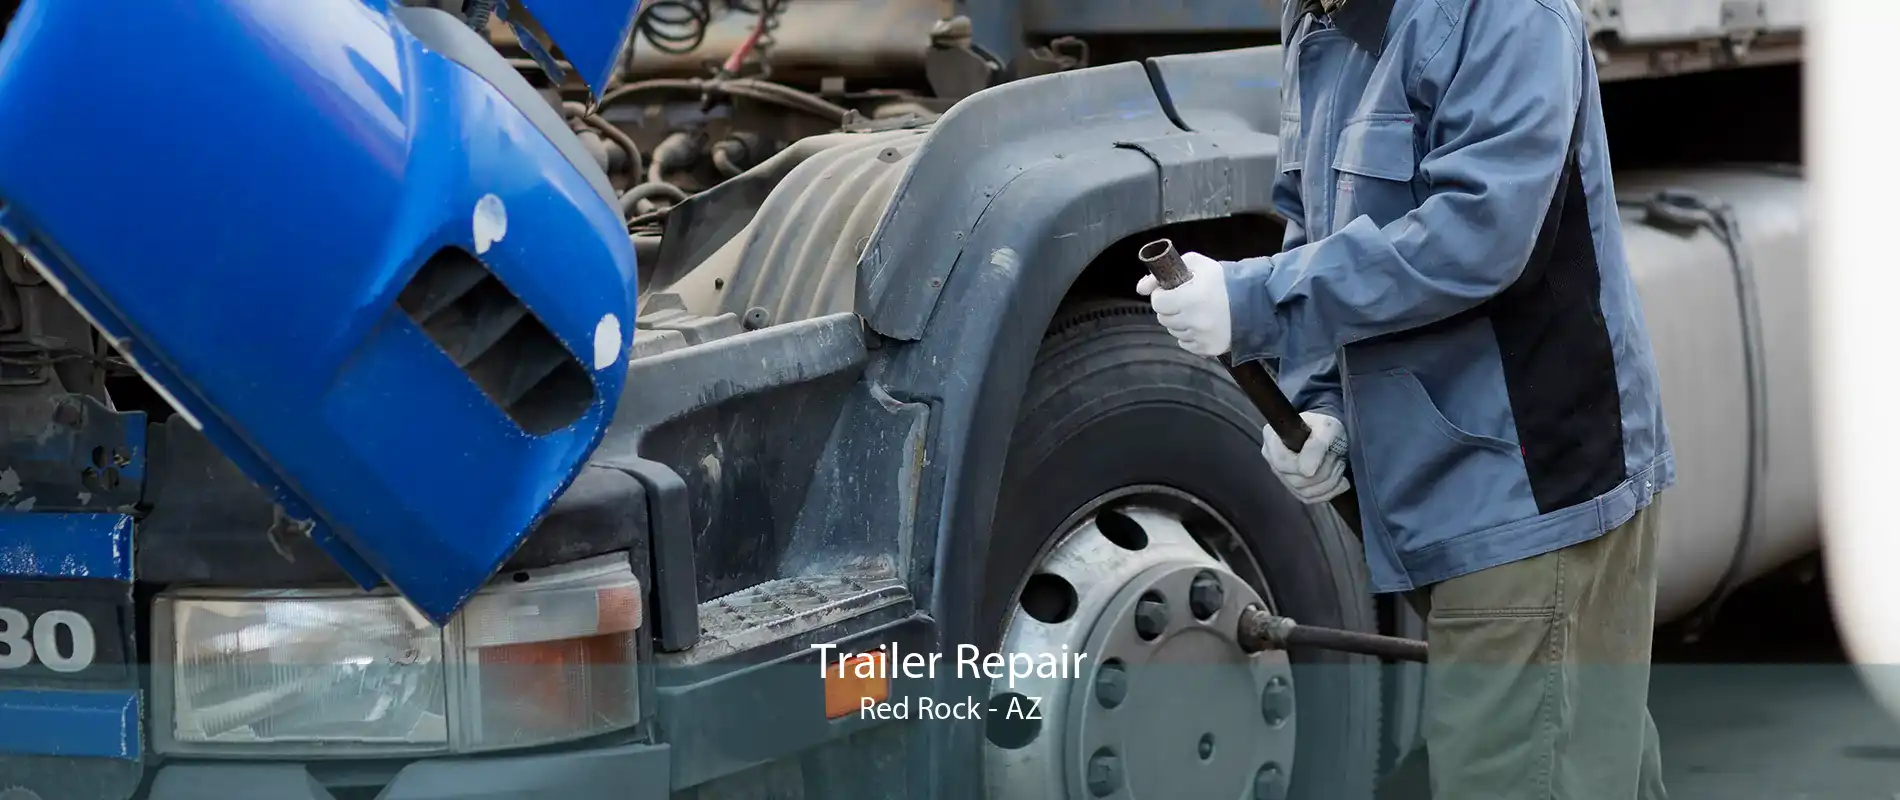 Trailer Repair Red Rock - AZ